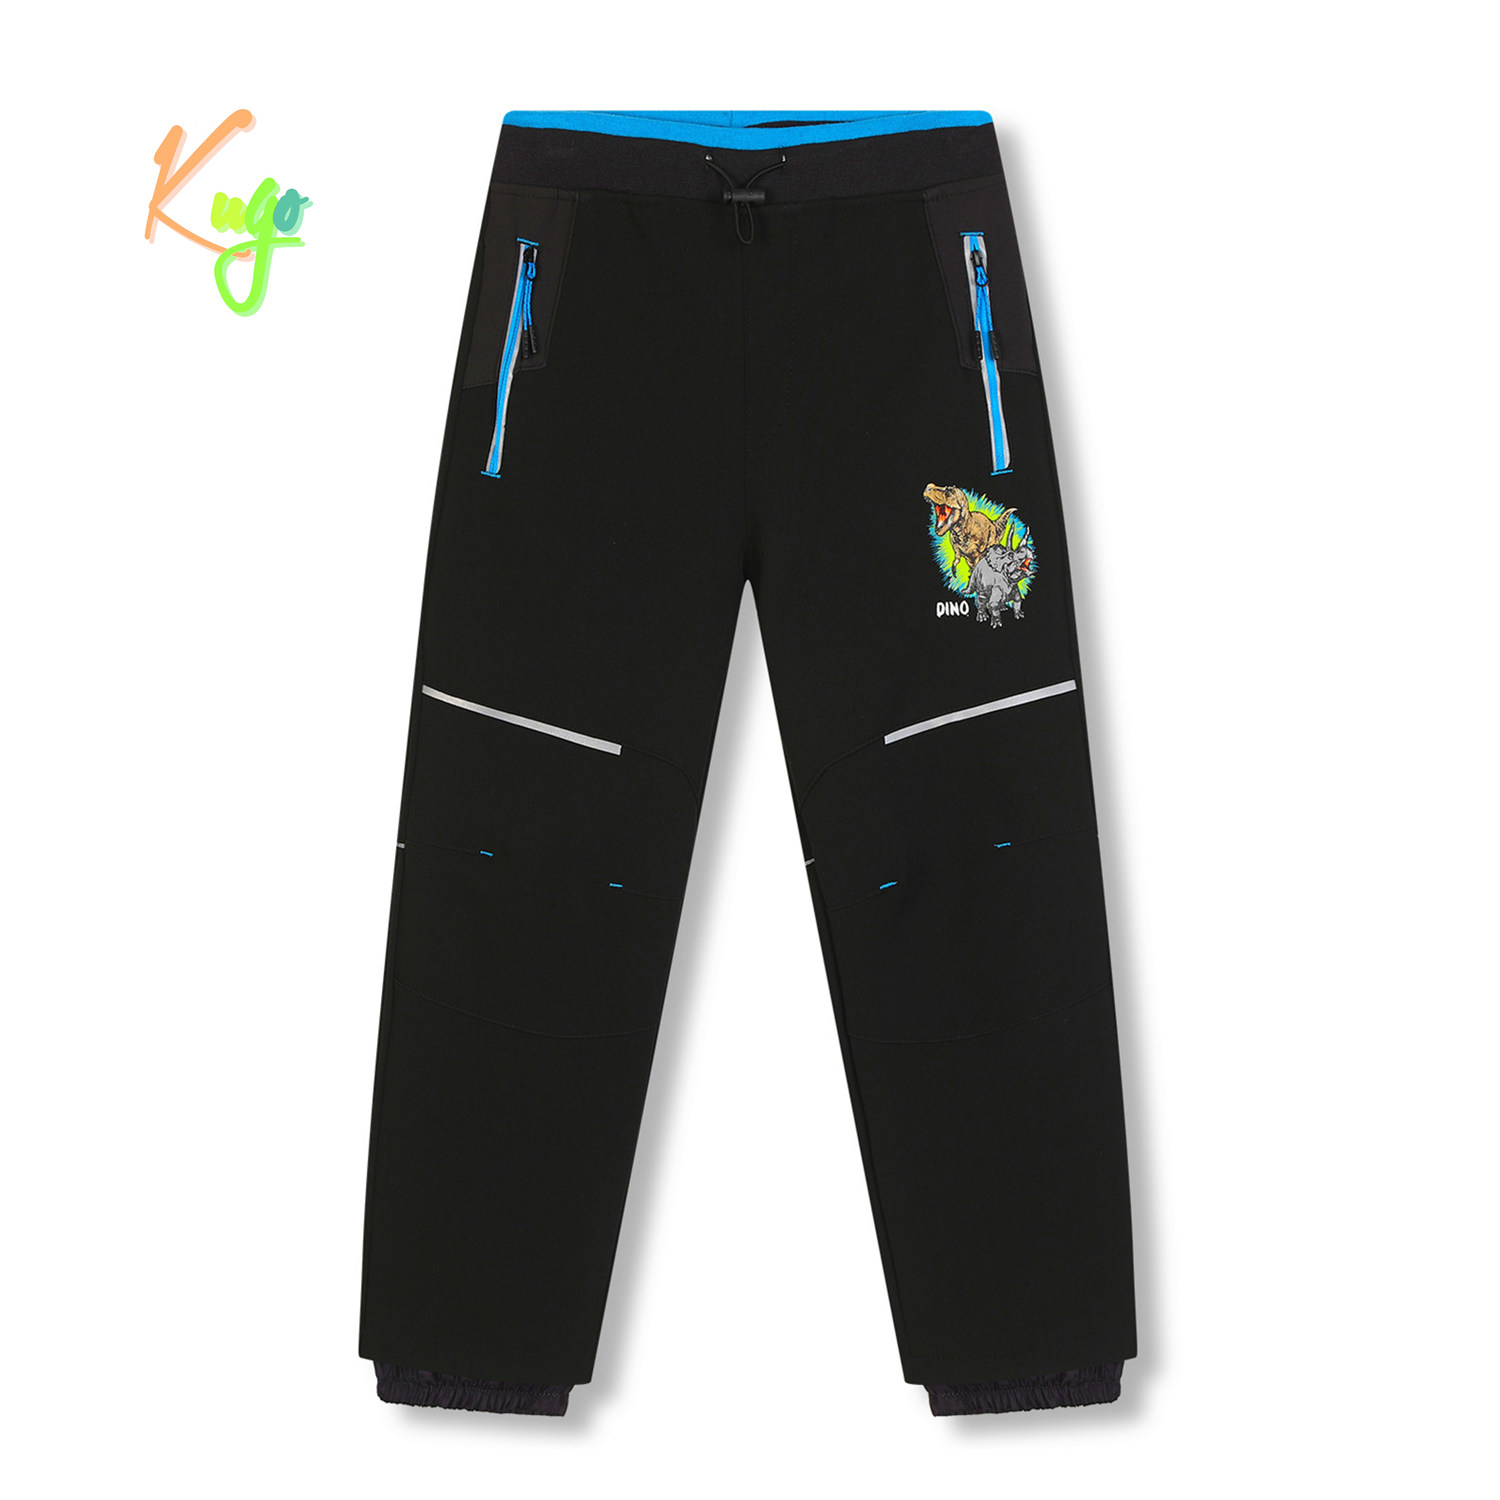 Chlapecké softshellové kalhoty, zateplené - KUGO HK5612, černá / tyrkysové zipy Barva: Černá, Velikost: 116